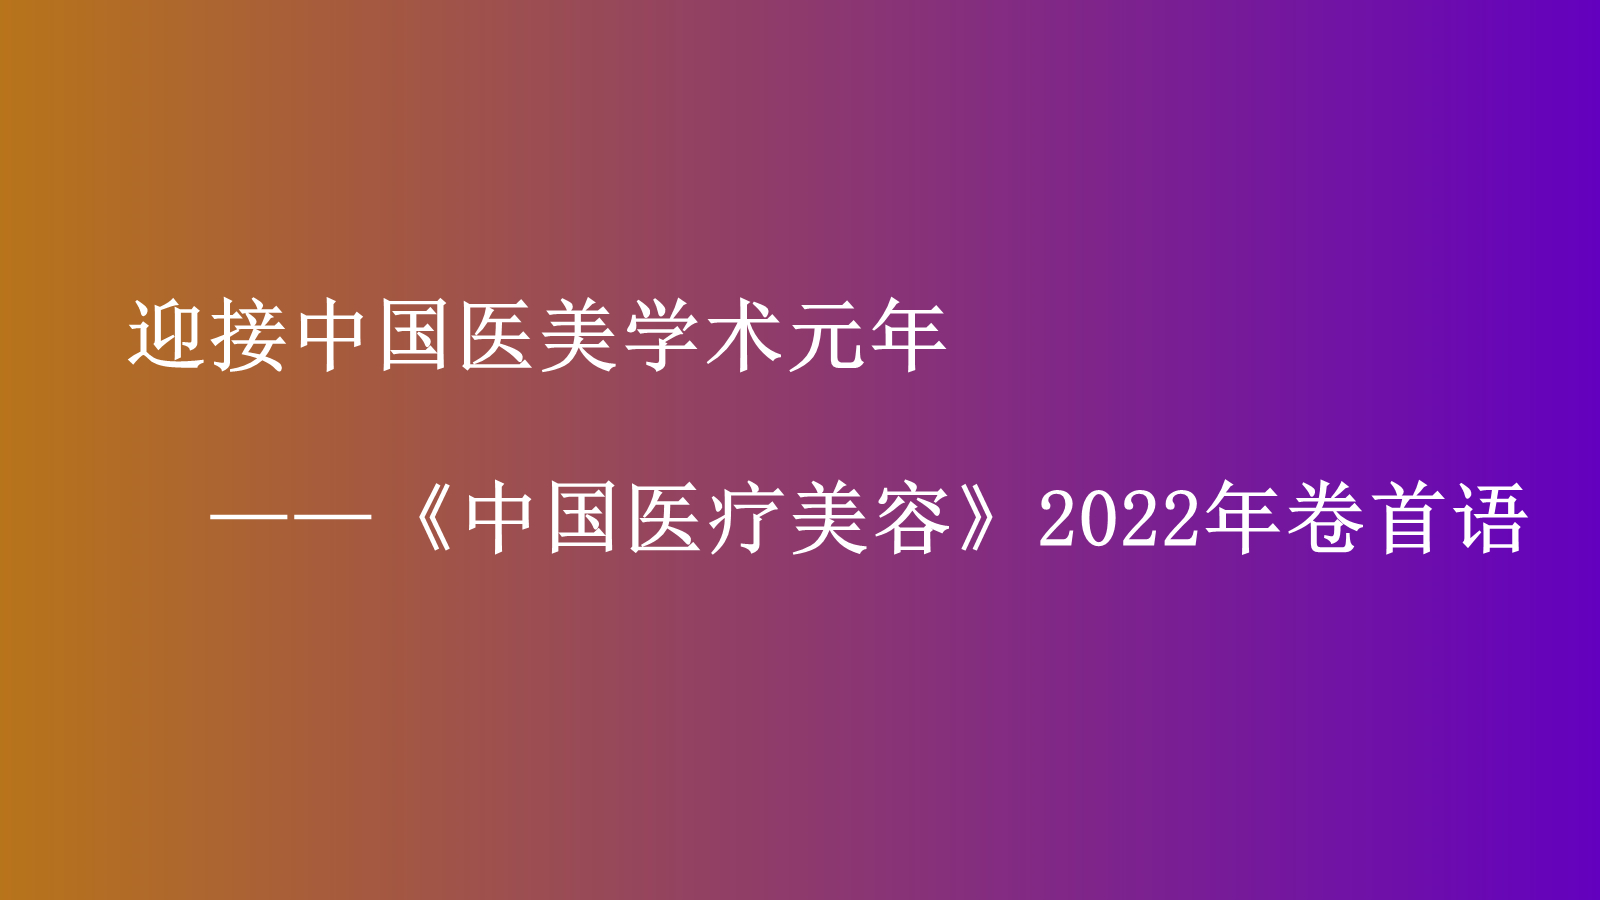 迎接中国医美学术元年 ,《中国医疗美容》2022年卷首语